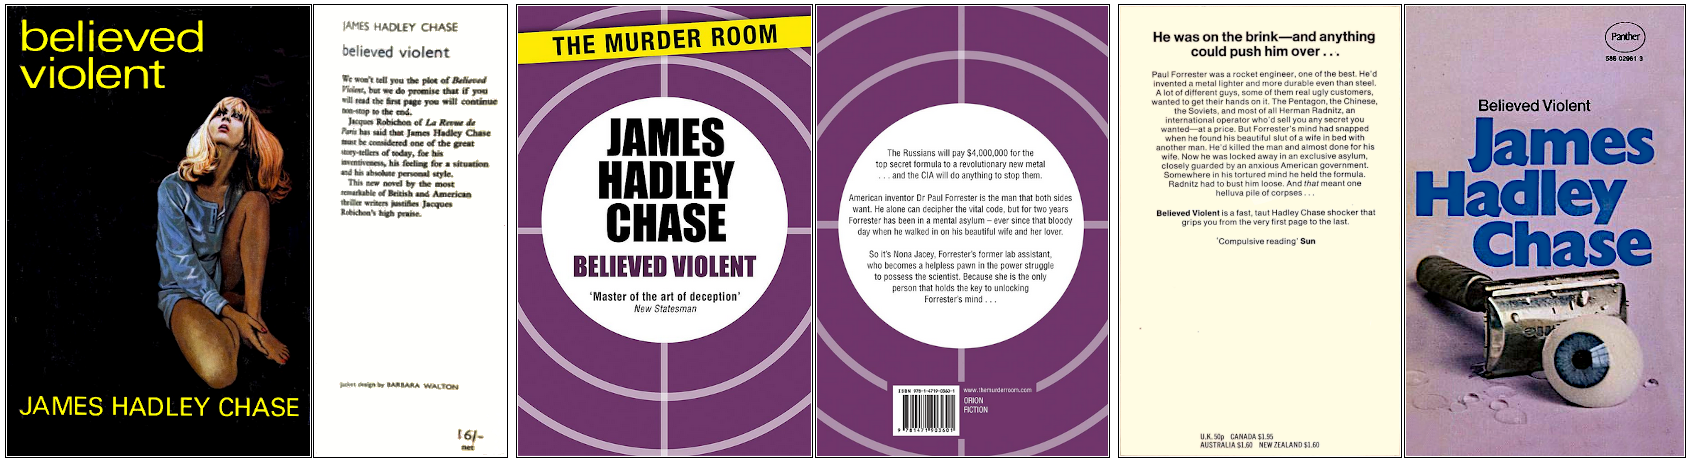 James Hadley Chase - Présumé dangereux - Éditions Robert Hale, Orion et Panther